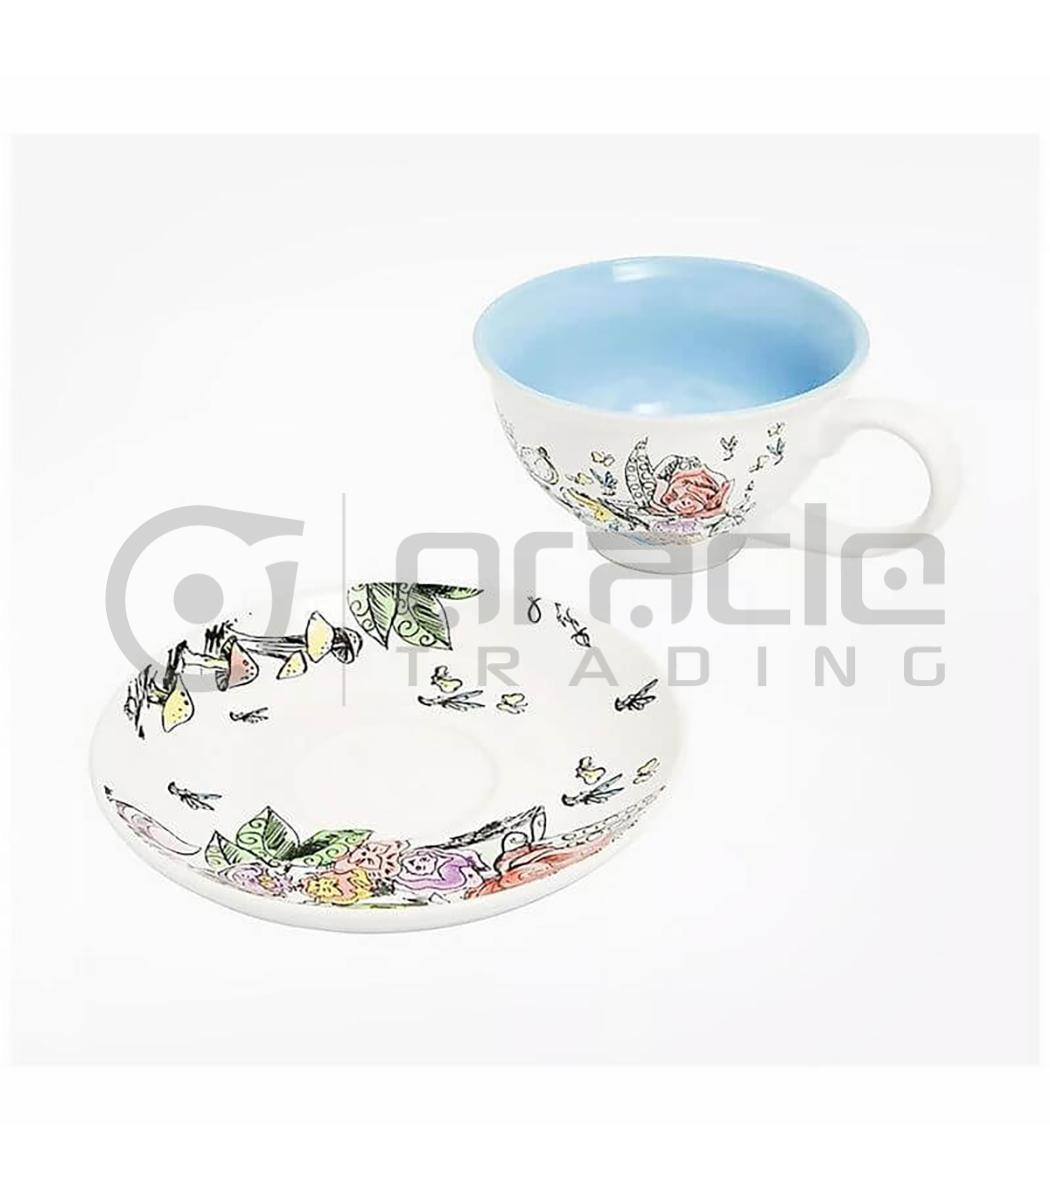 teacup saucer set alice in wonderland tss004 c